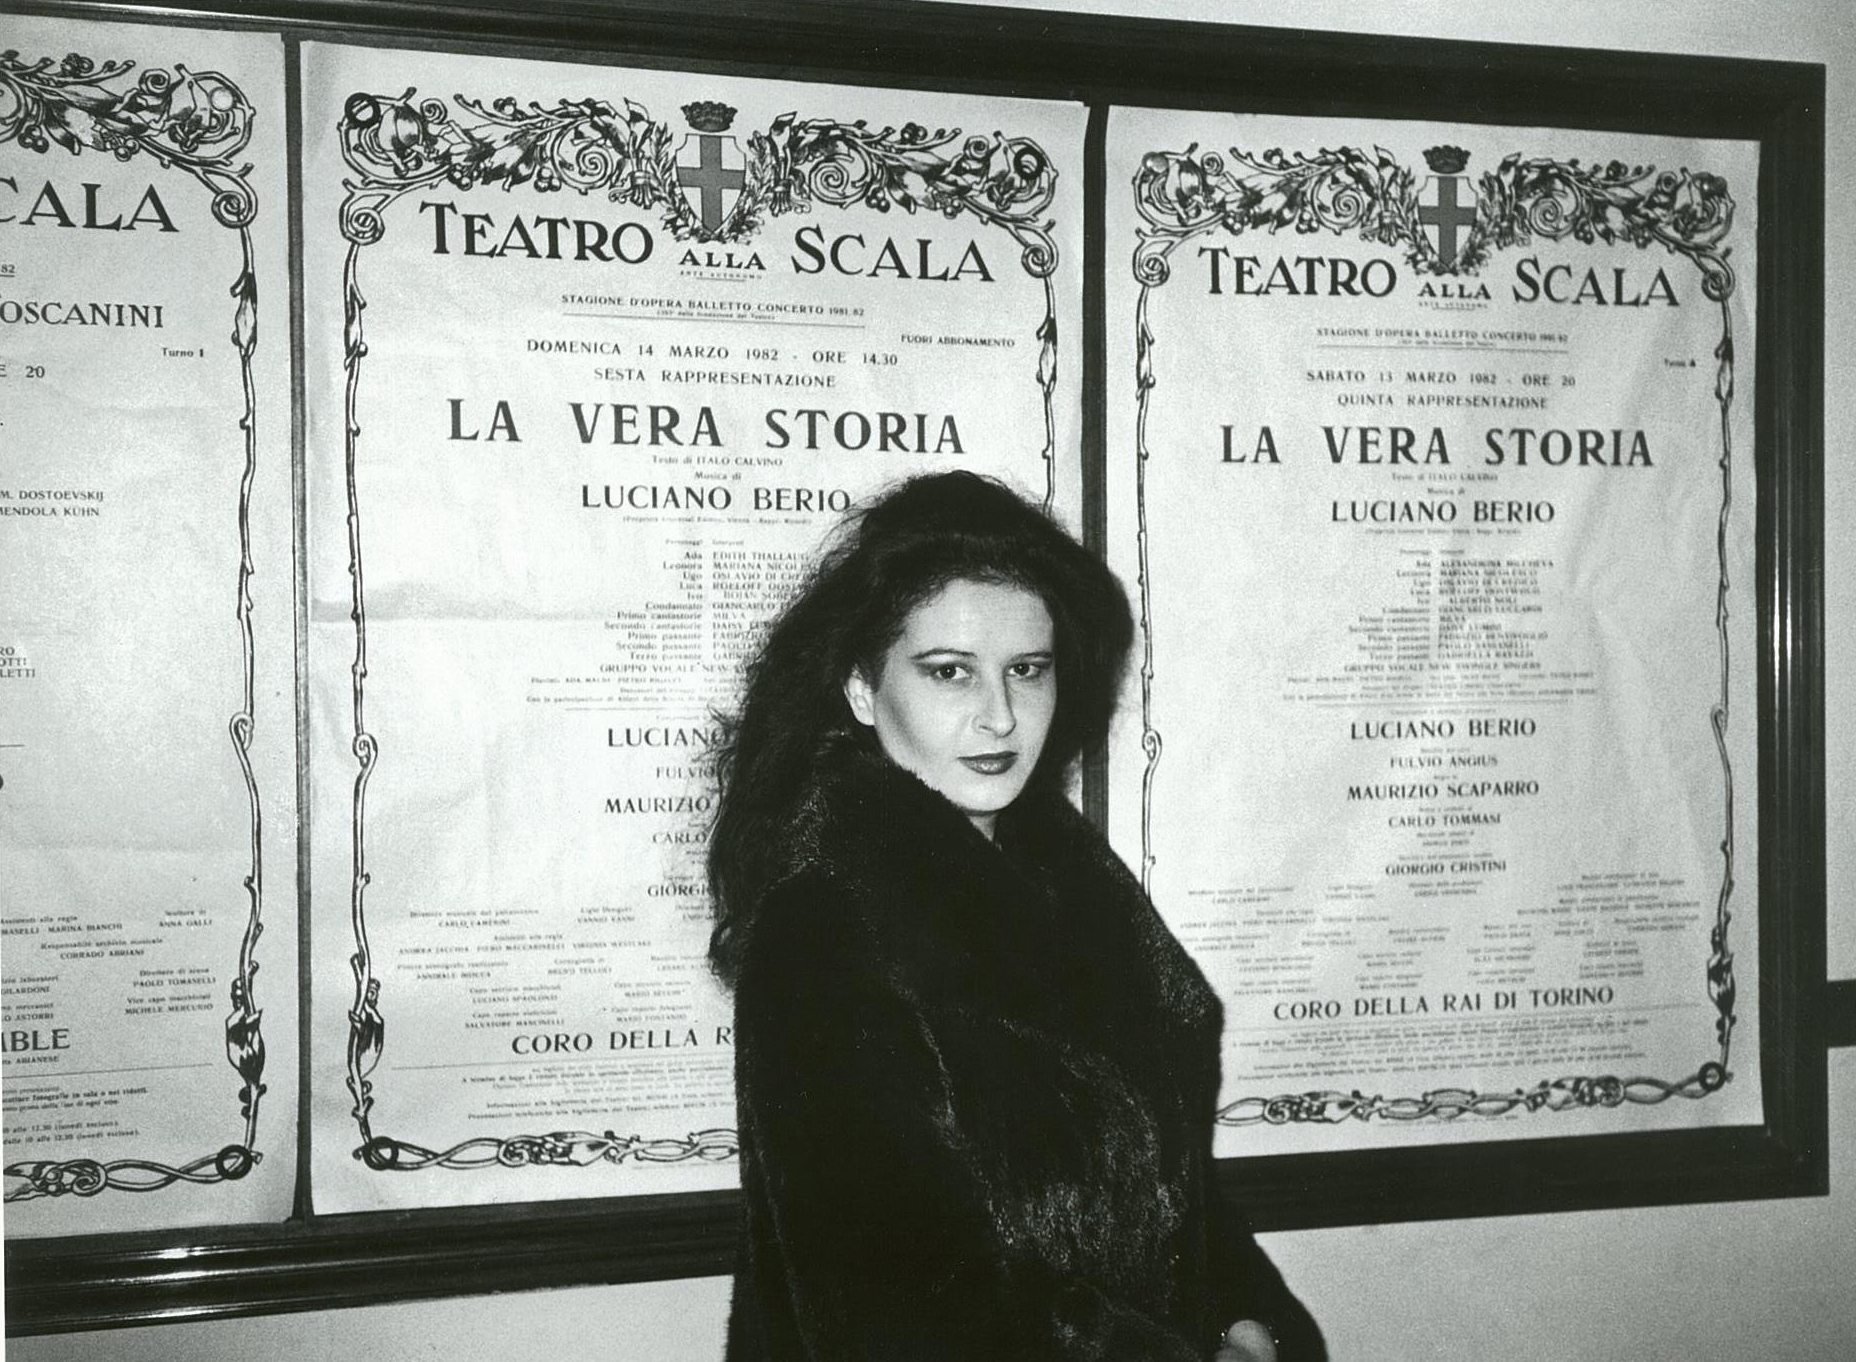 Debutul la Teatrul alla Scala din Milano în premiera mondială a operei. La Vera Storia de Luciano Berio